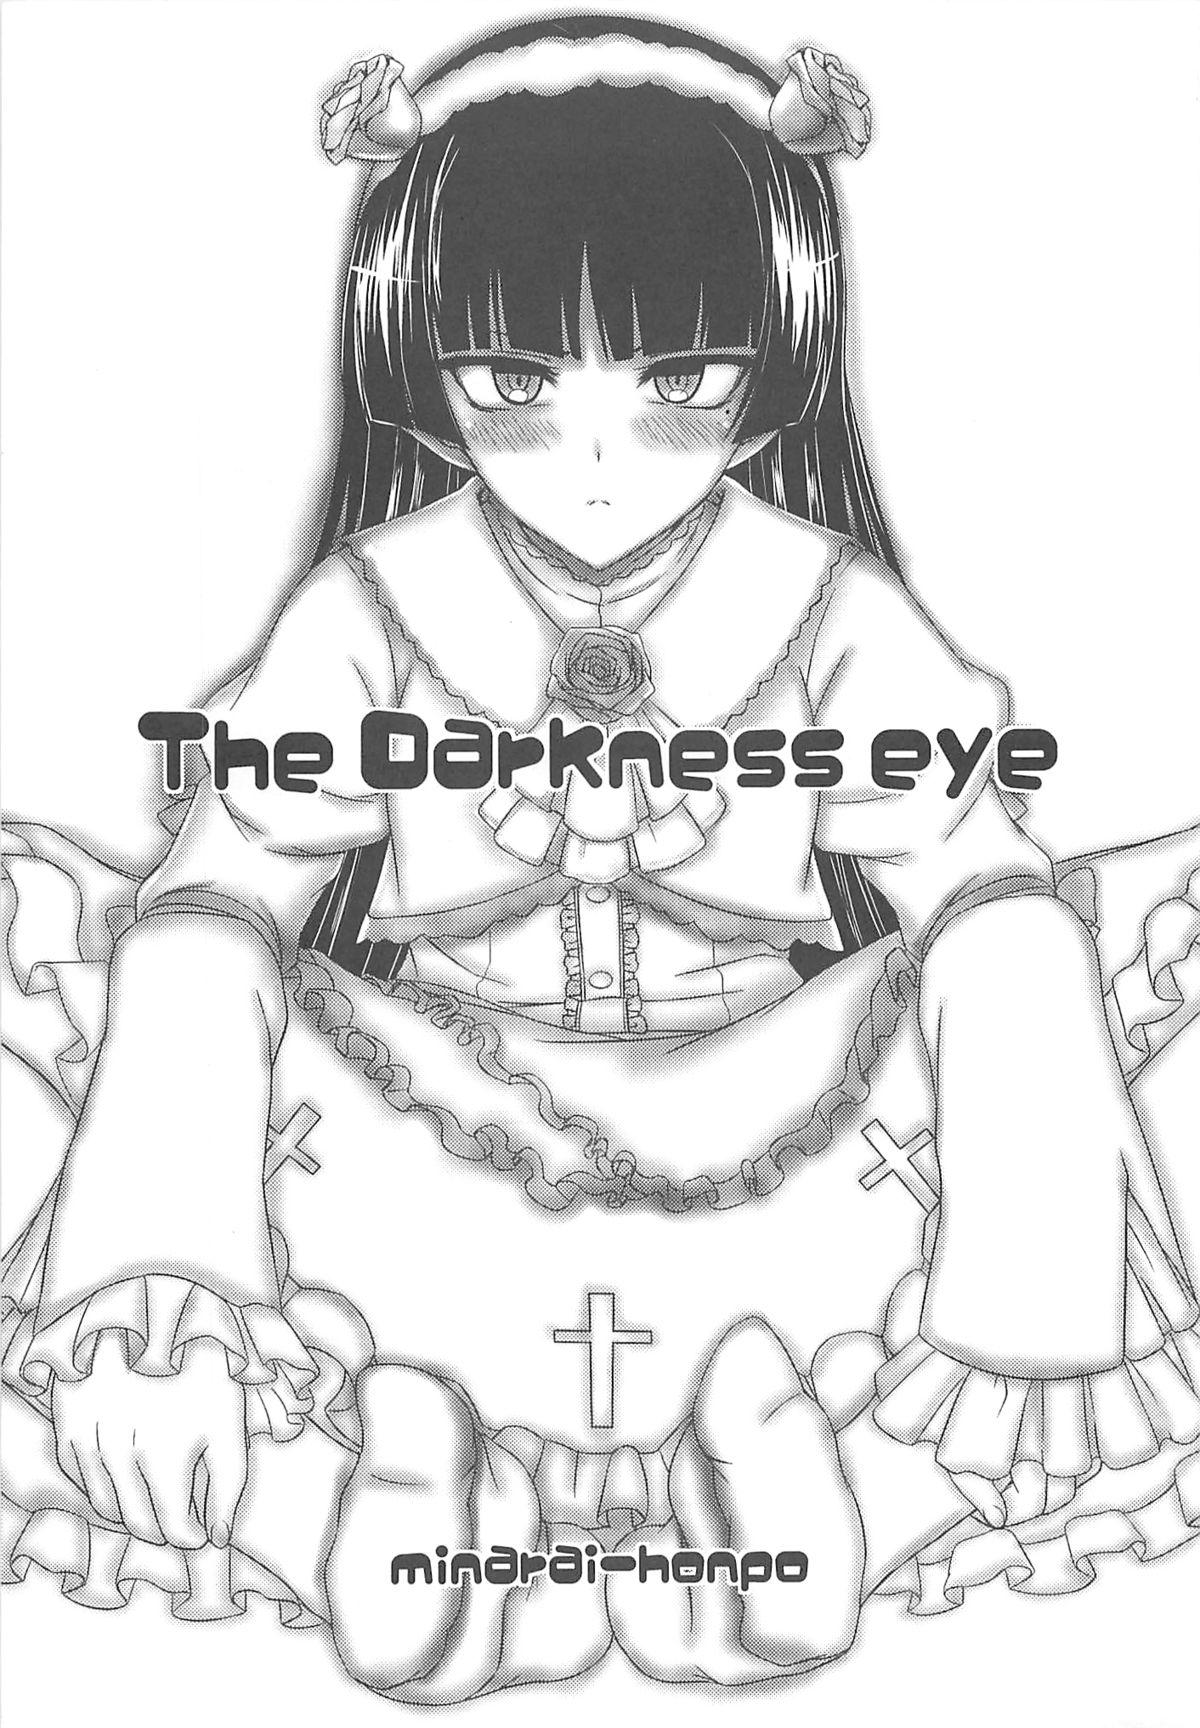 The Darkness eye 2